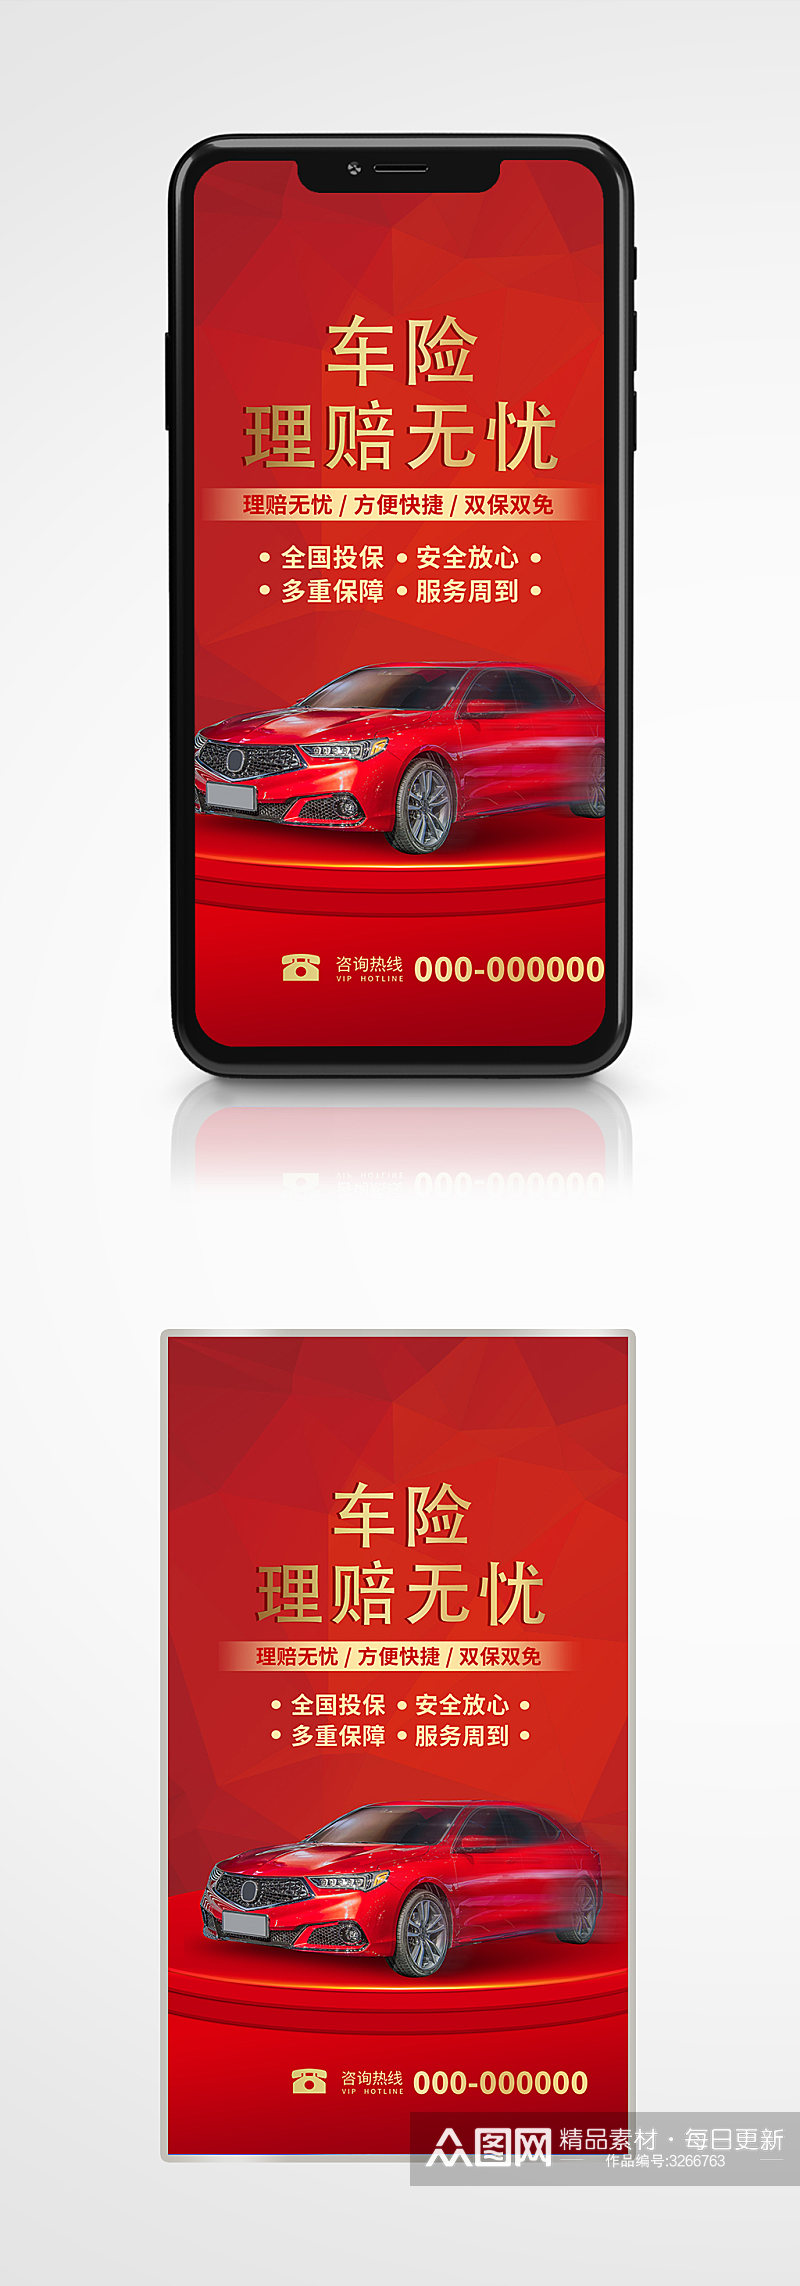 汽车保险宣传手机海报原创红色理赔素材